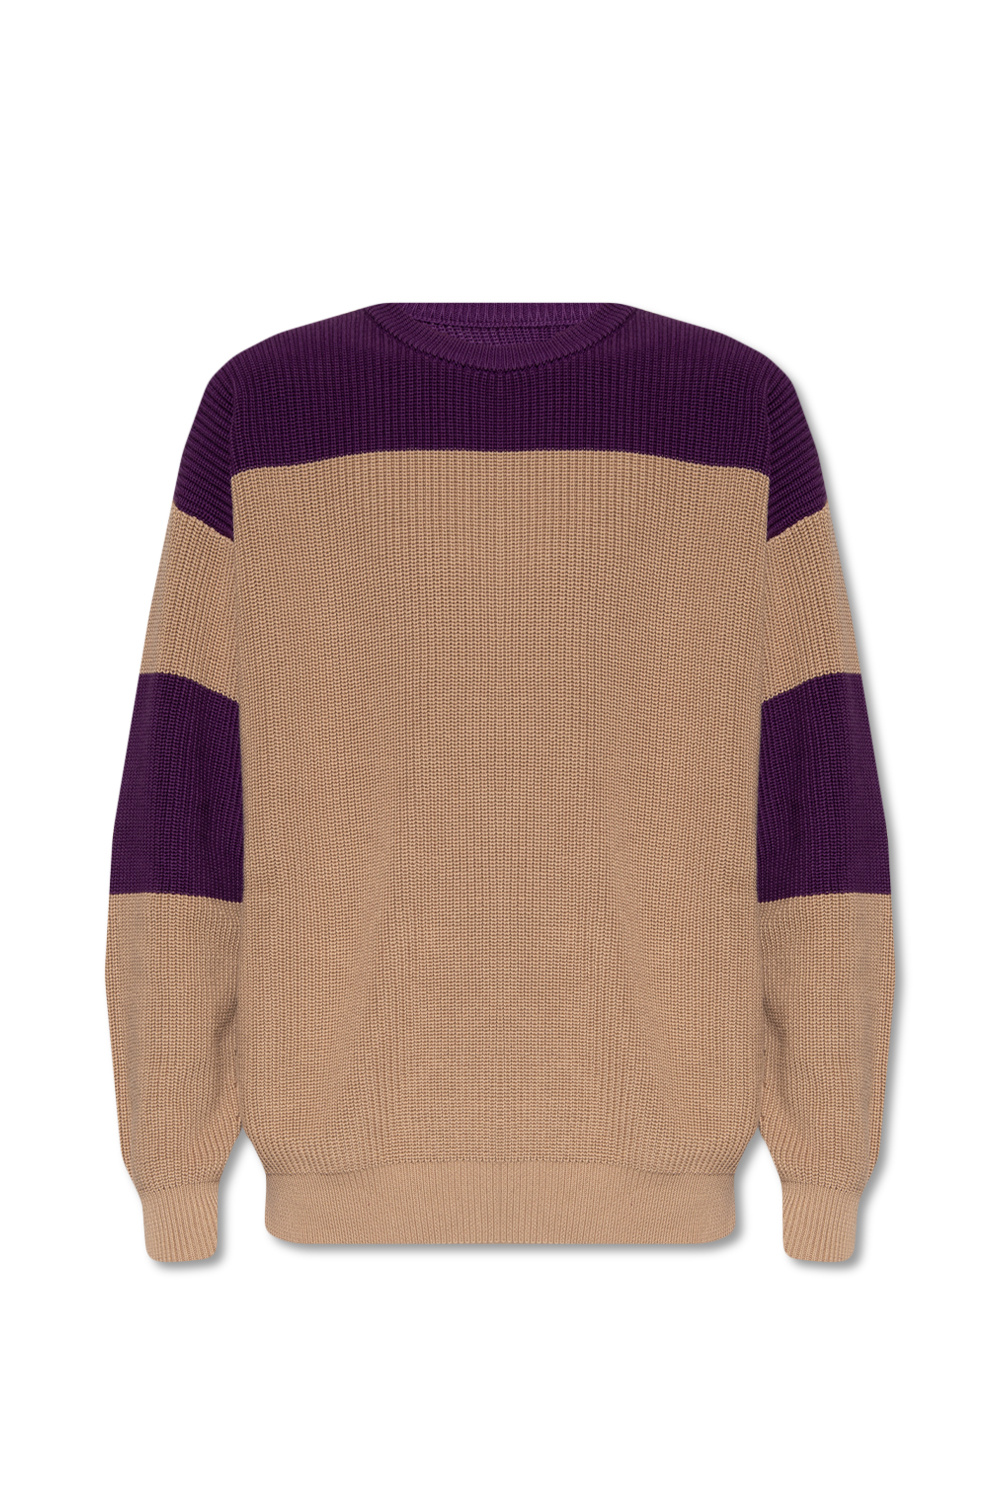 Emporio Armani Ribbed sweater